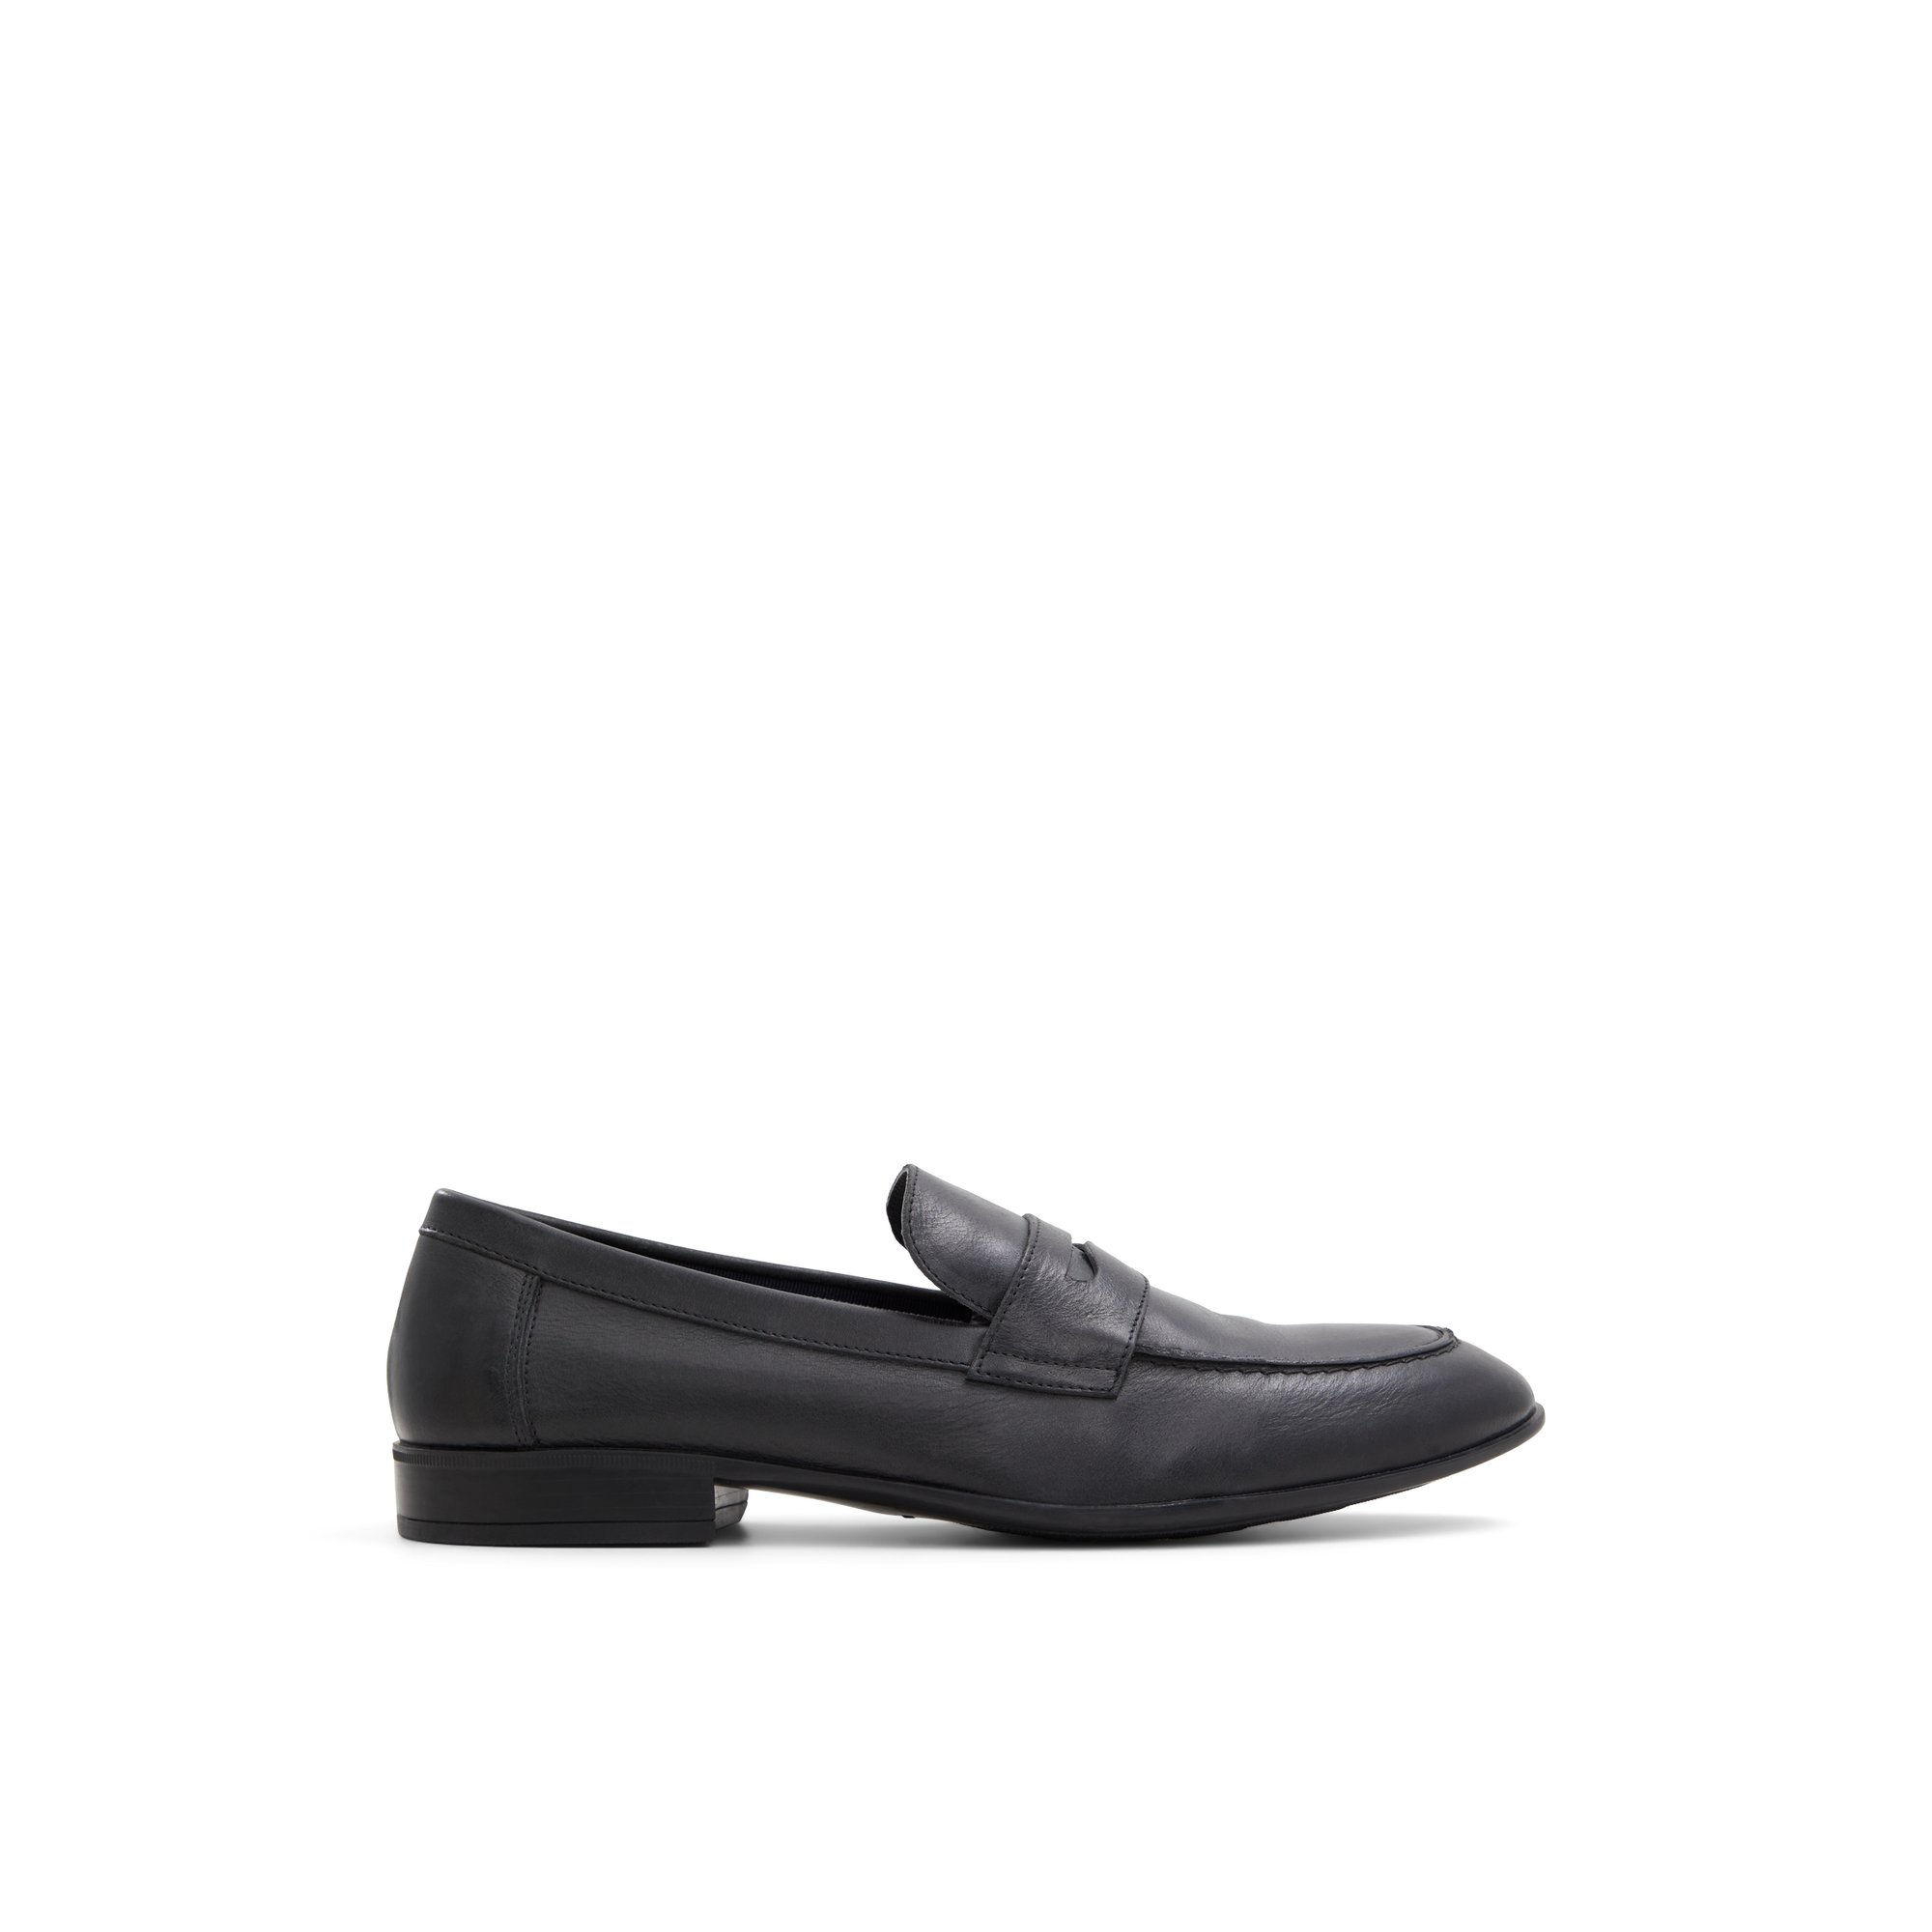 Luca Ferri Franco - Men's Footwear Shoes Dress Loafers